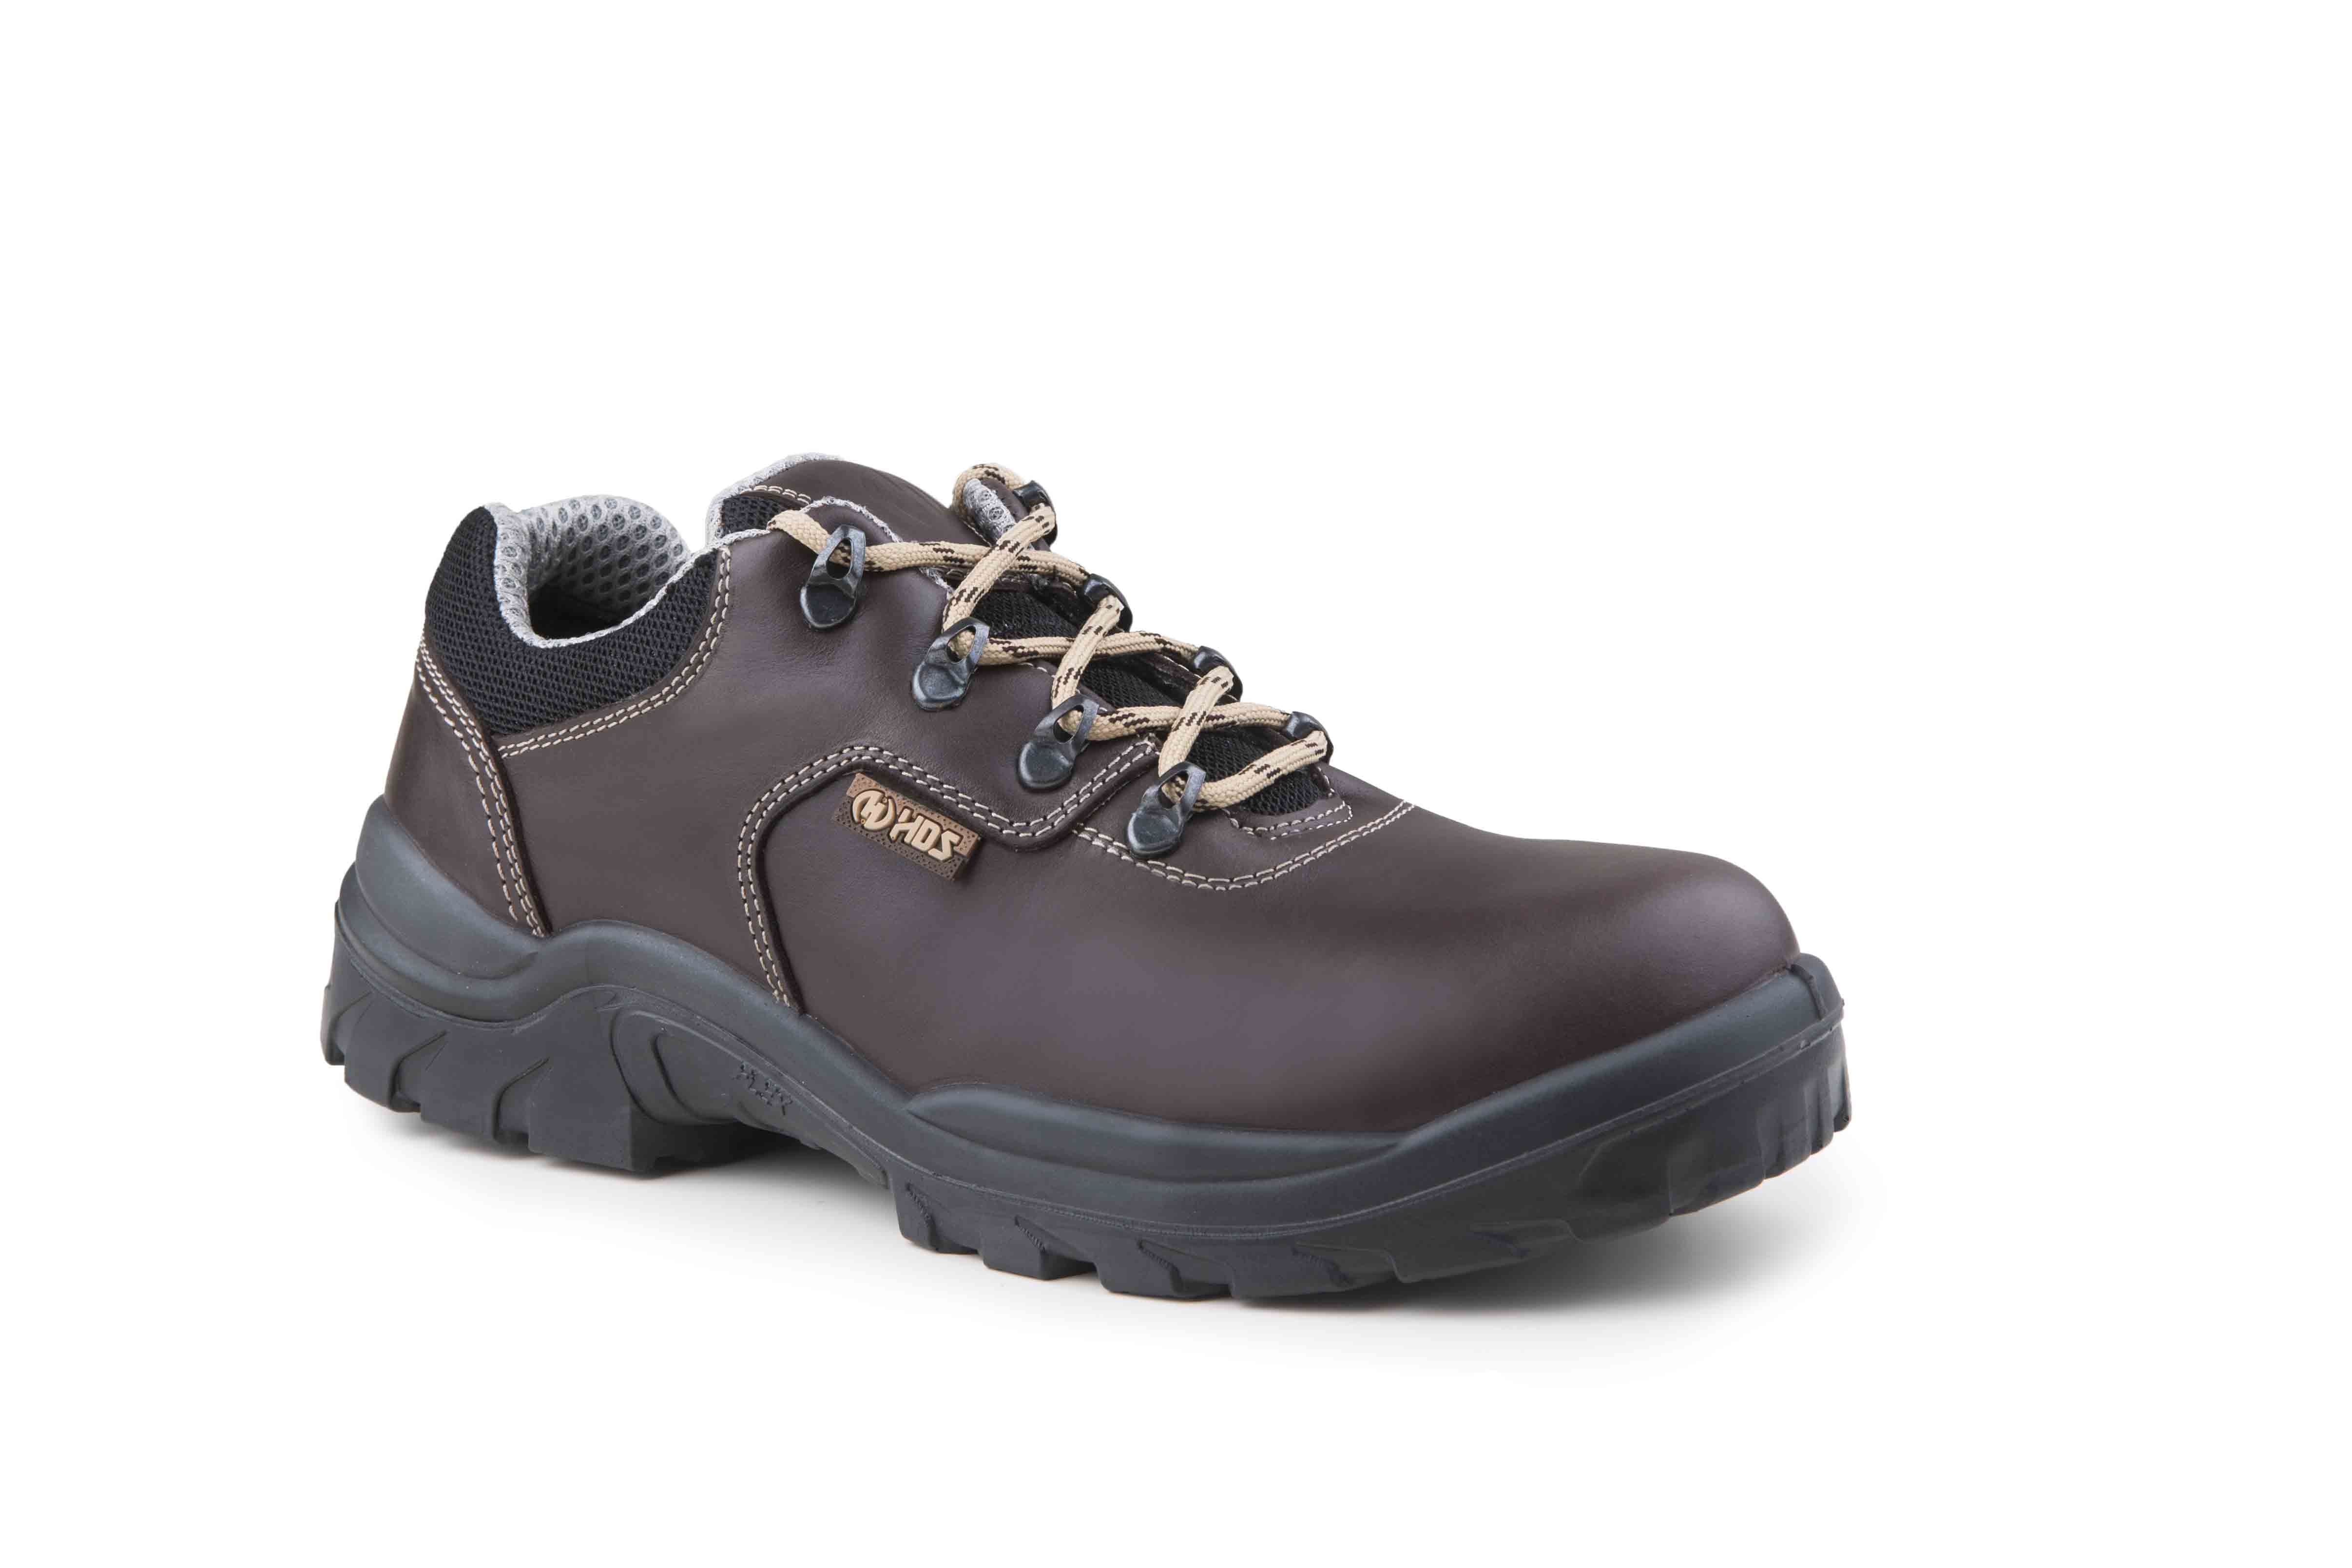 HDS İş Güvenlik Ayakkabıları, Fx 500 Modeli